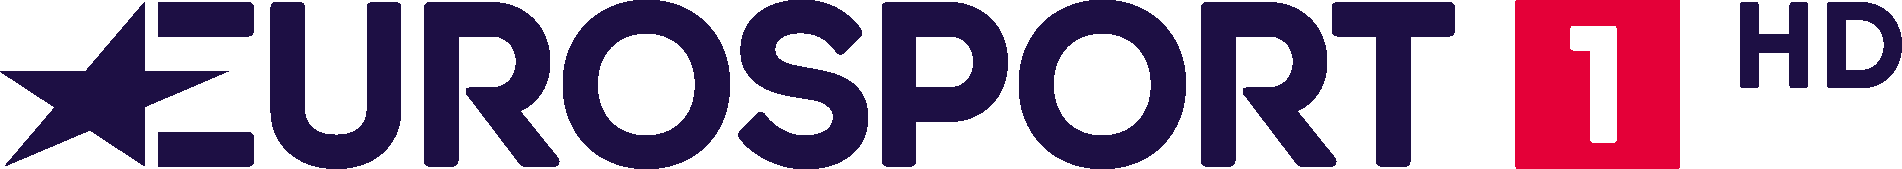 Eurosport 1 HD Logo png